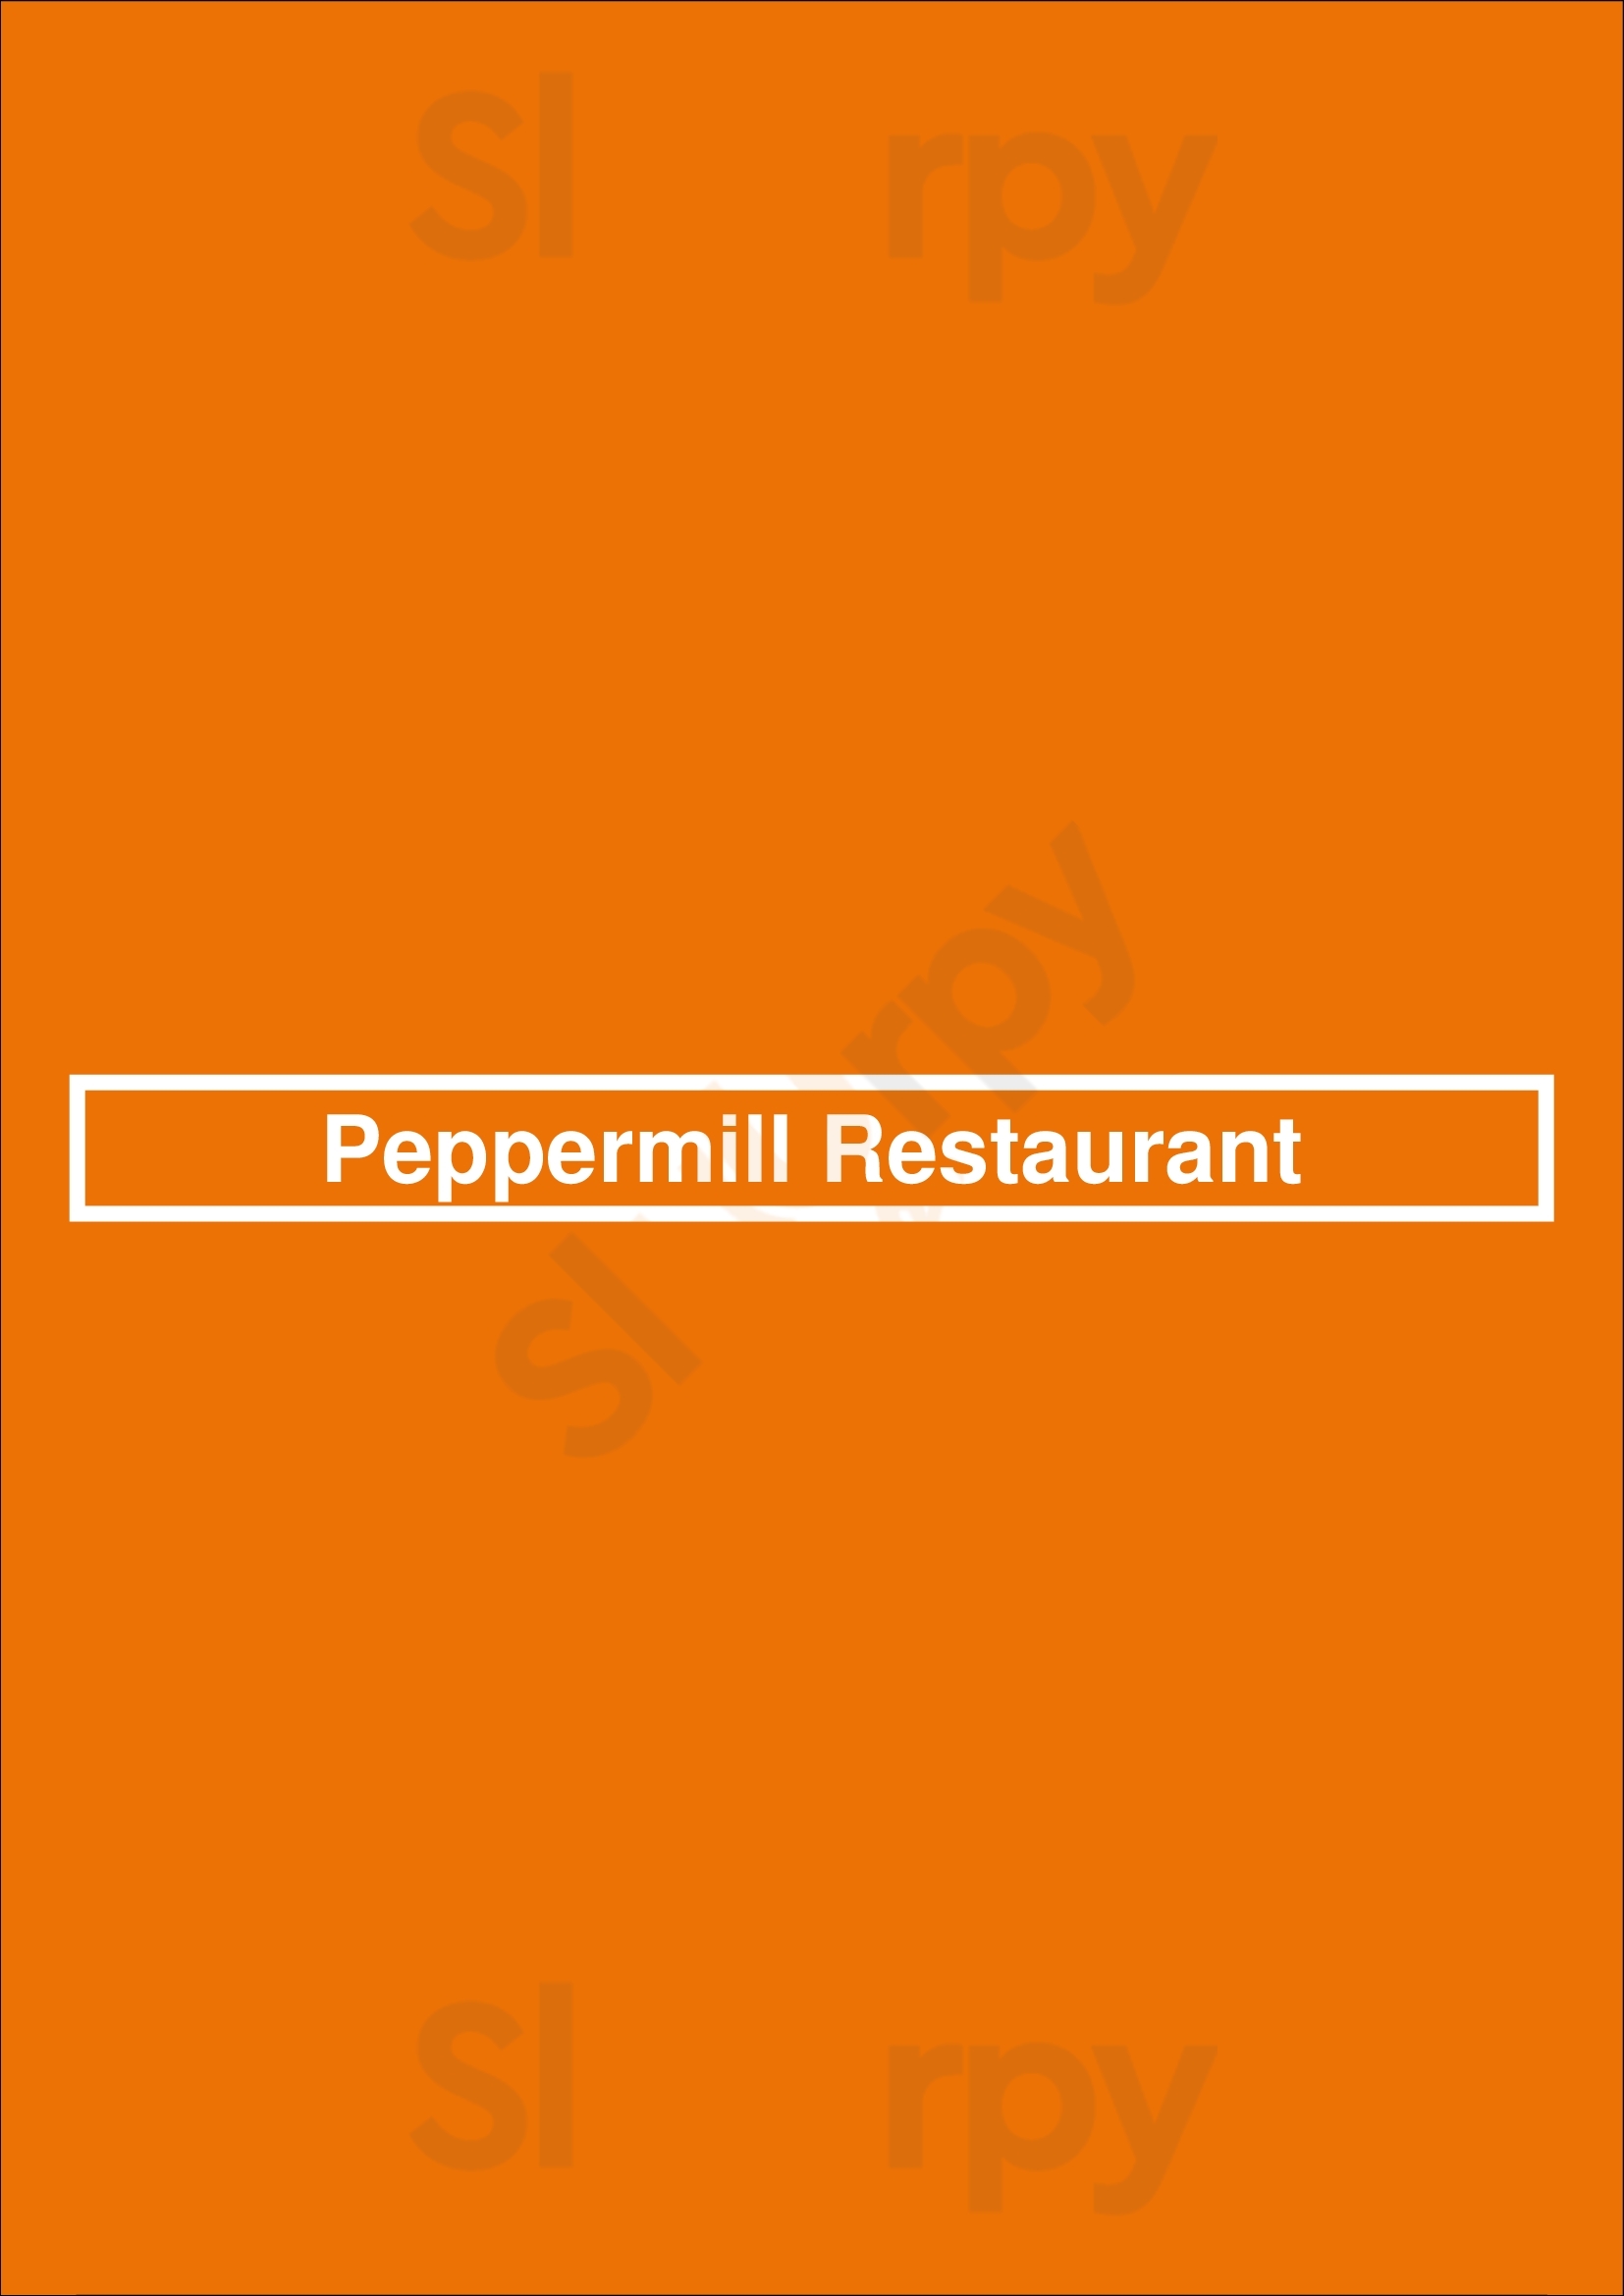 Peppermill Restaurant Lutherville Menu - 1